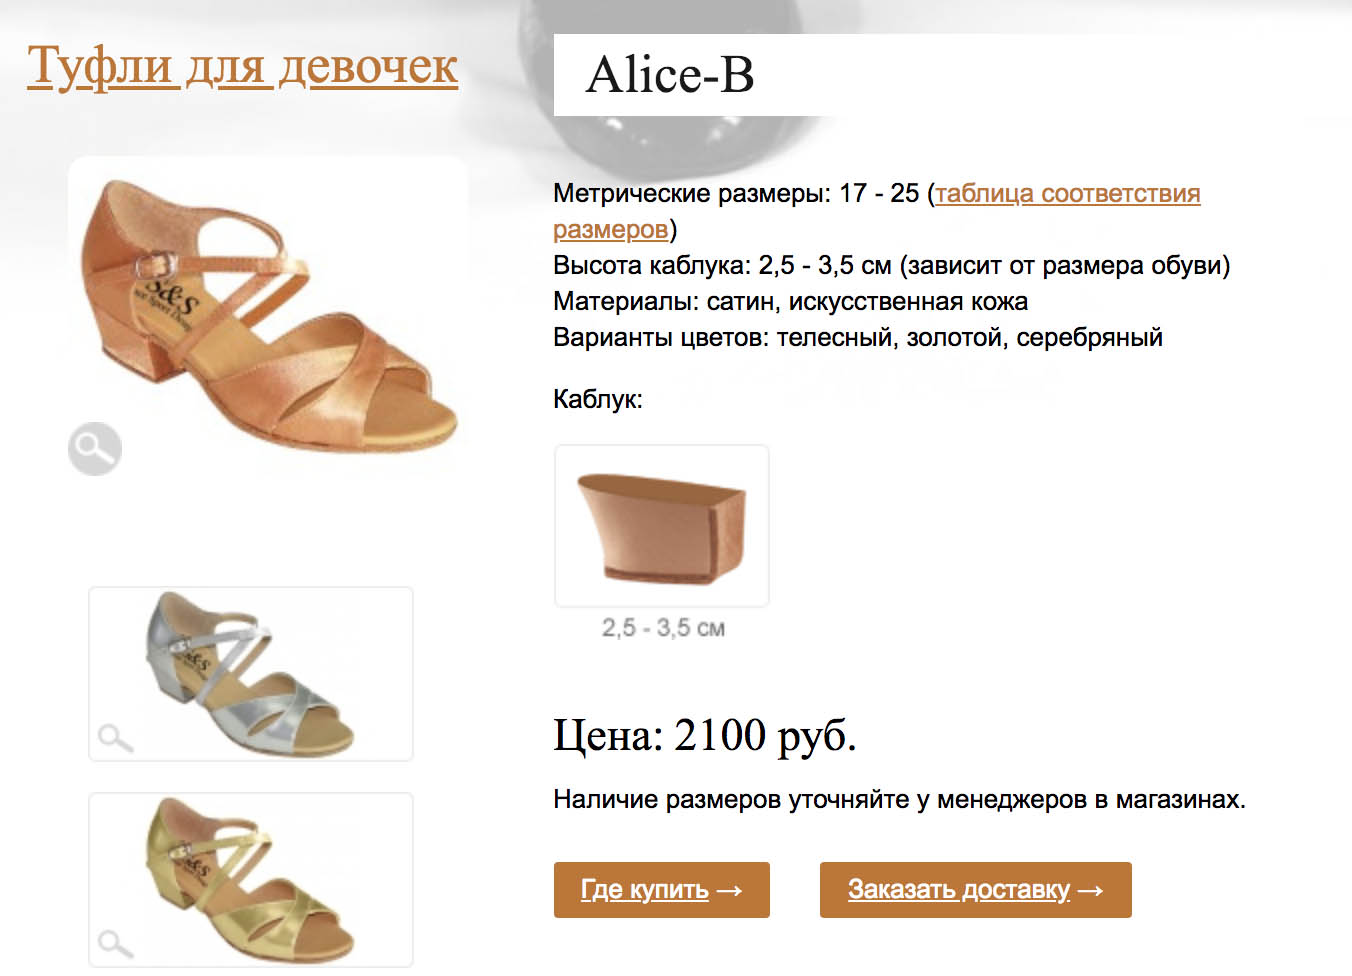 Основные цвета танцевальных туфель: телесный, золотой, серебристый. Источник: ss-dance-shoes.ru